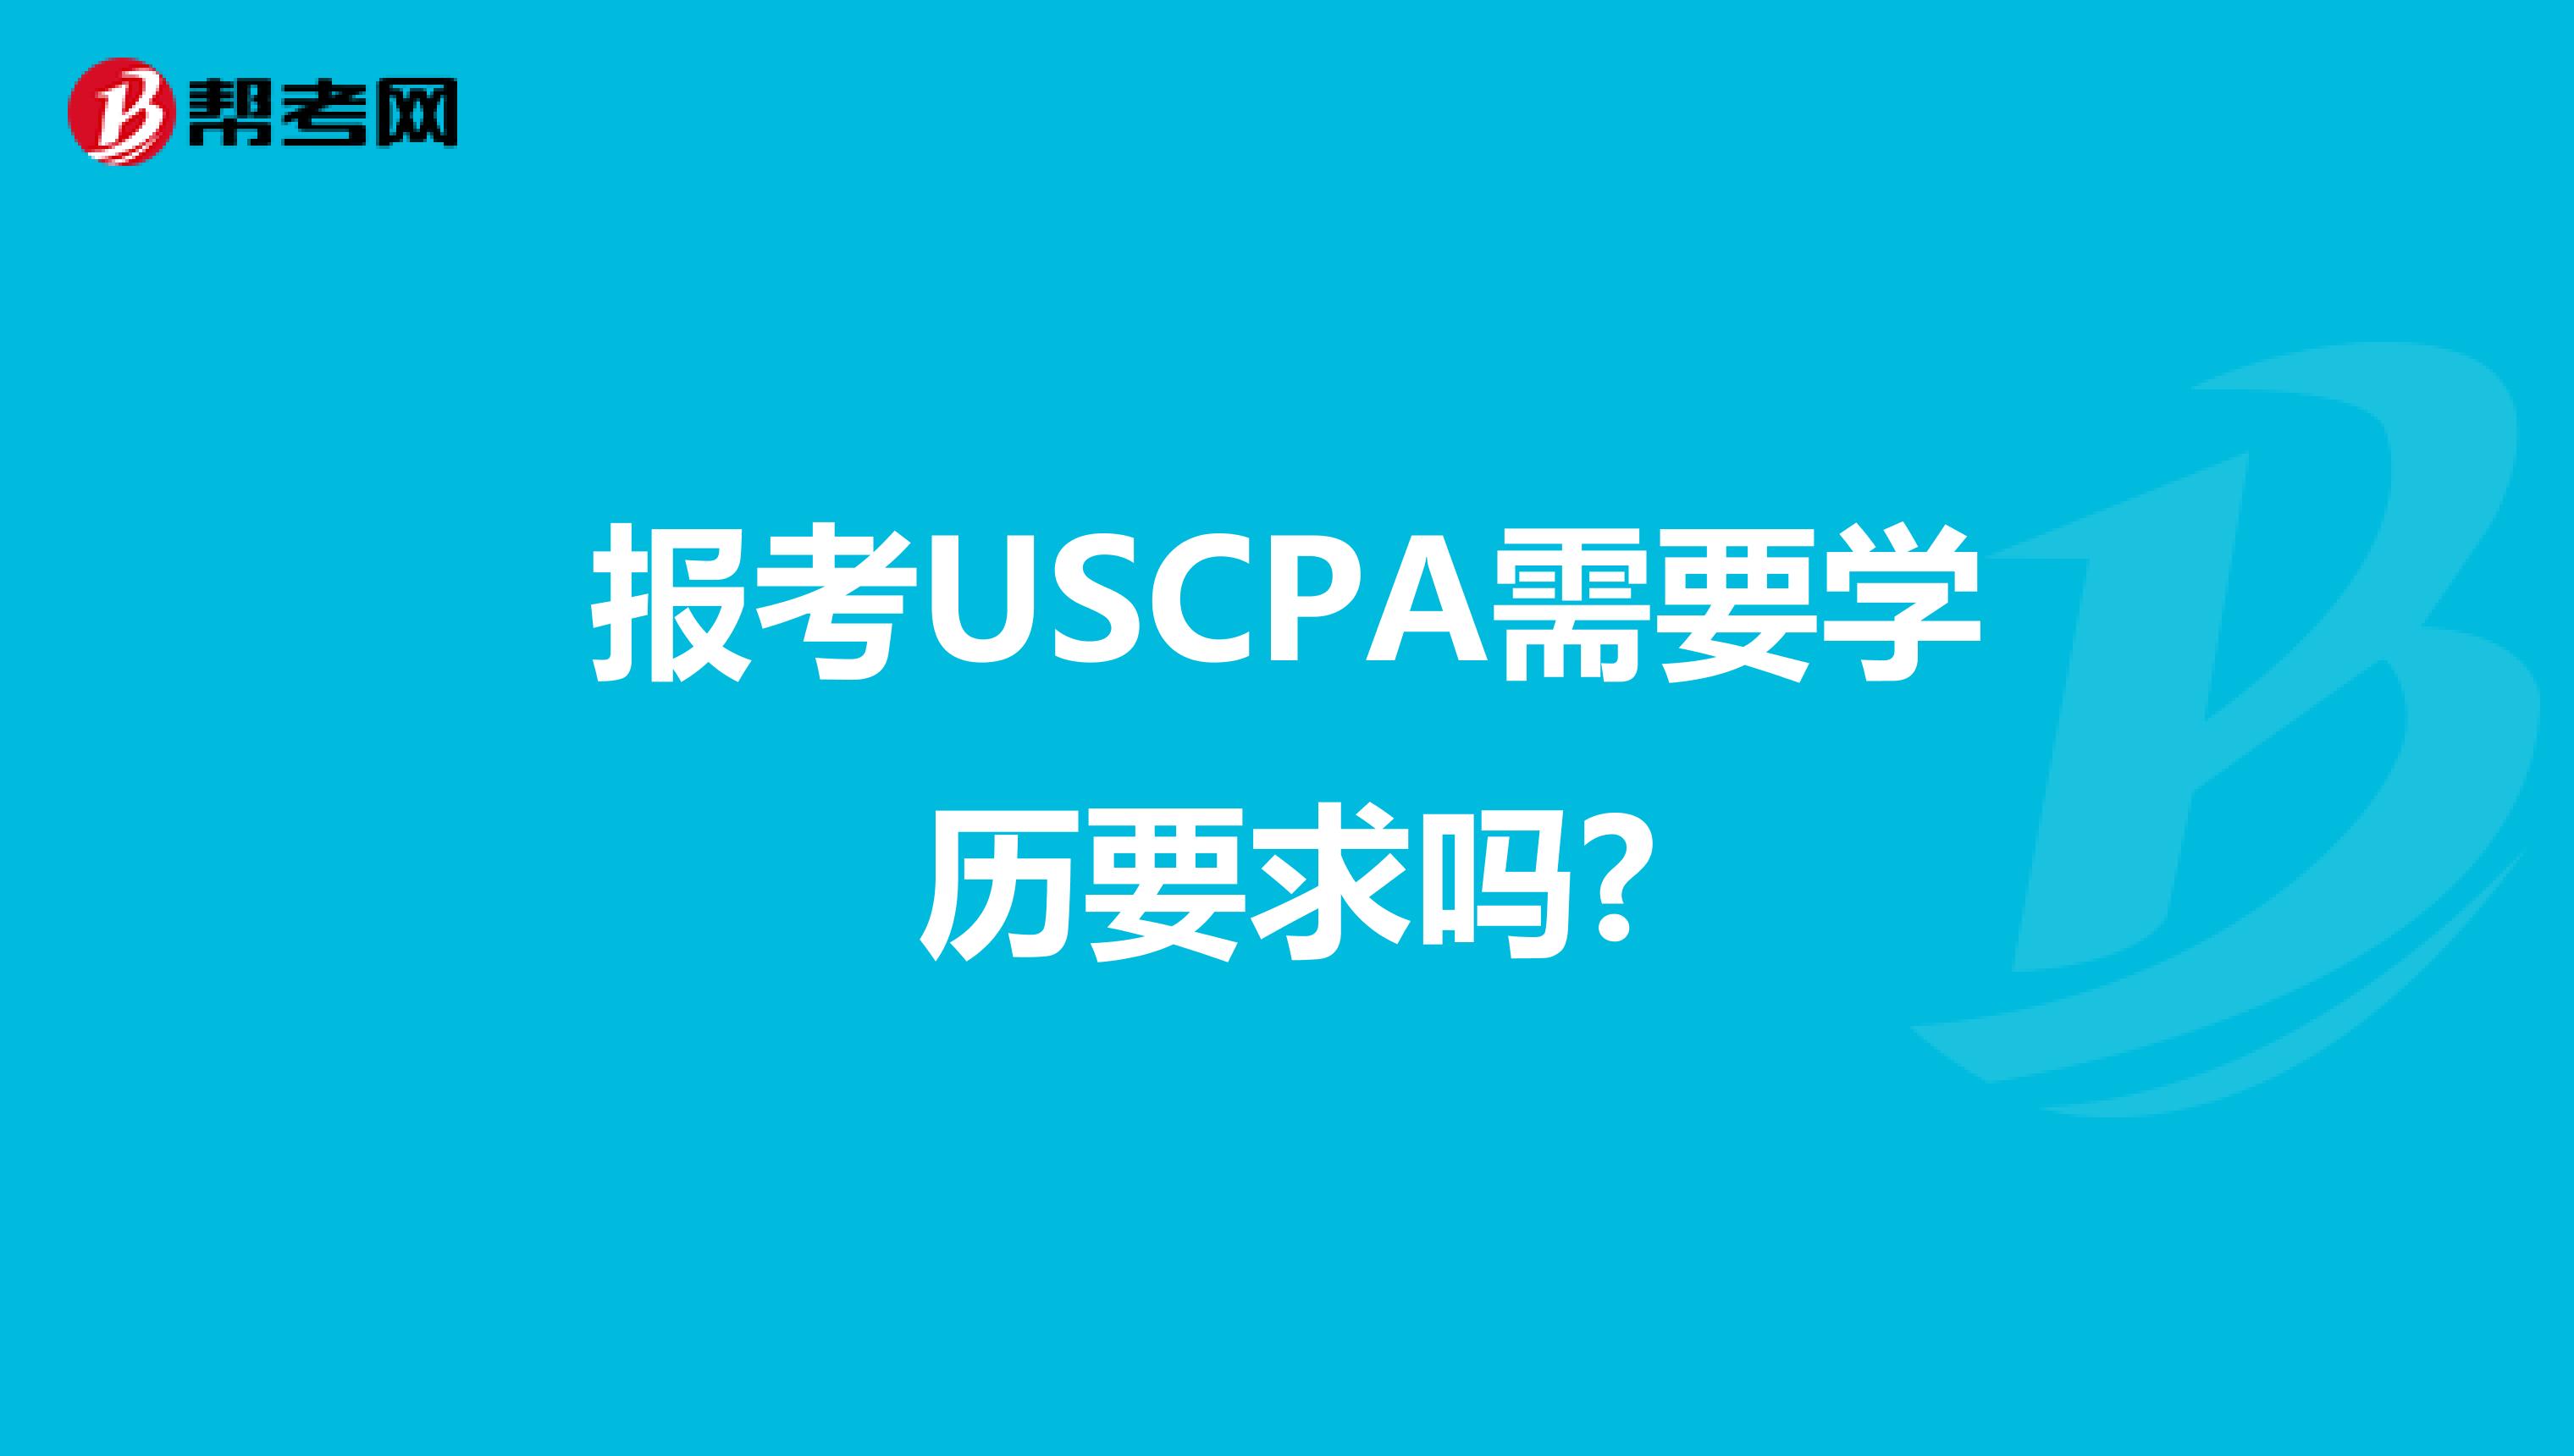 报考USCPA需要学历要求吗?